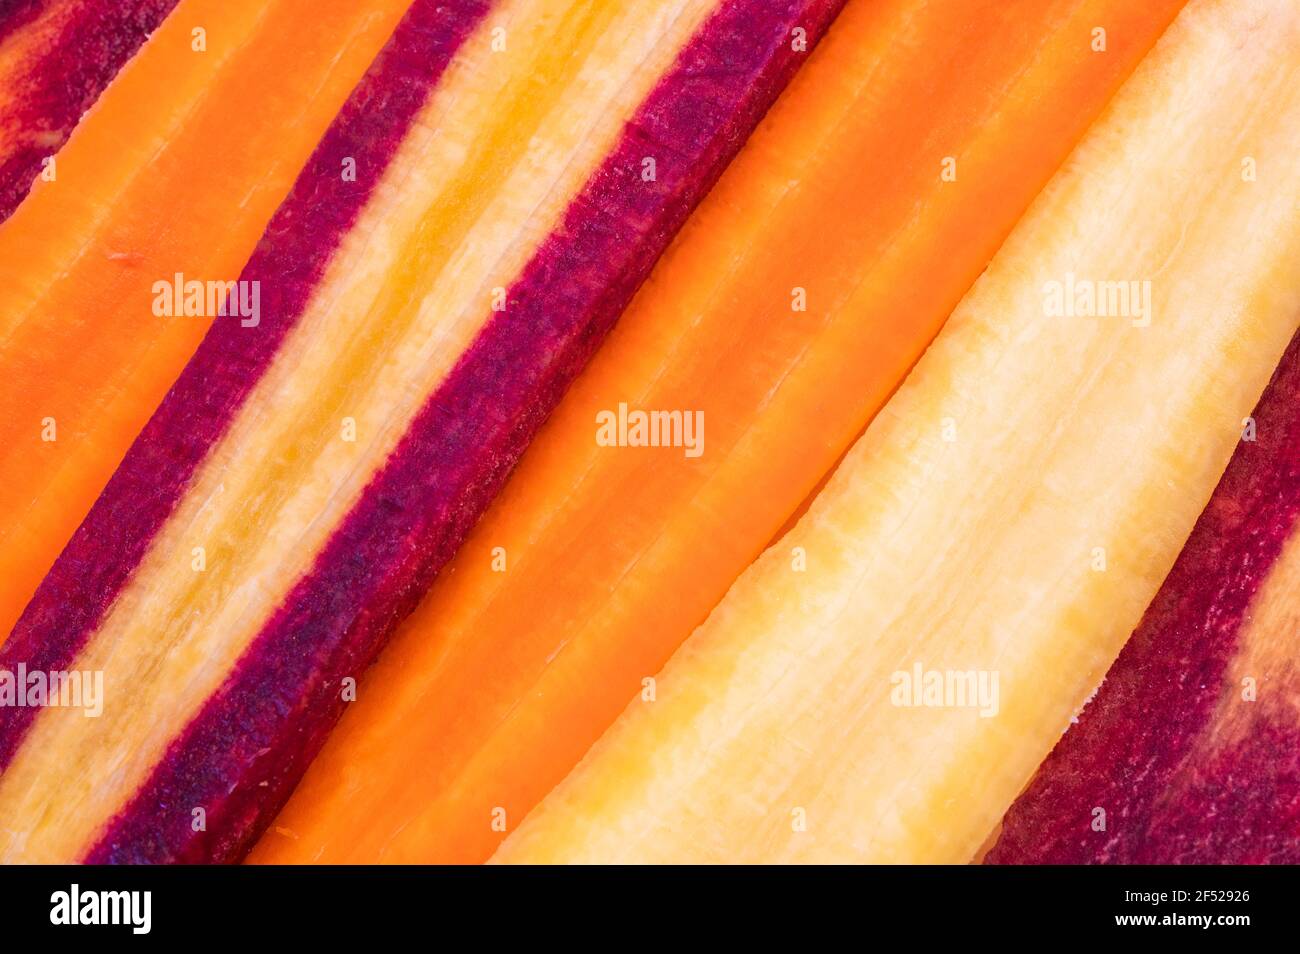 sliced carrots Stock Photo